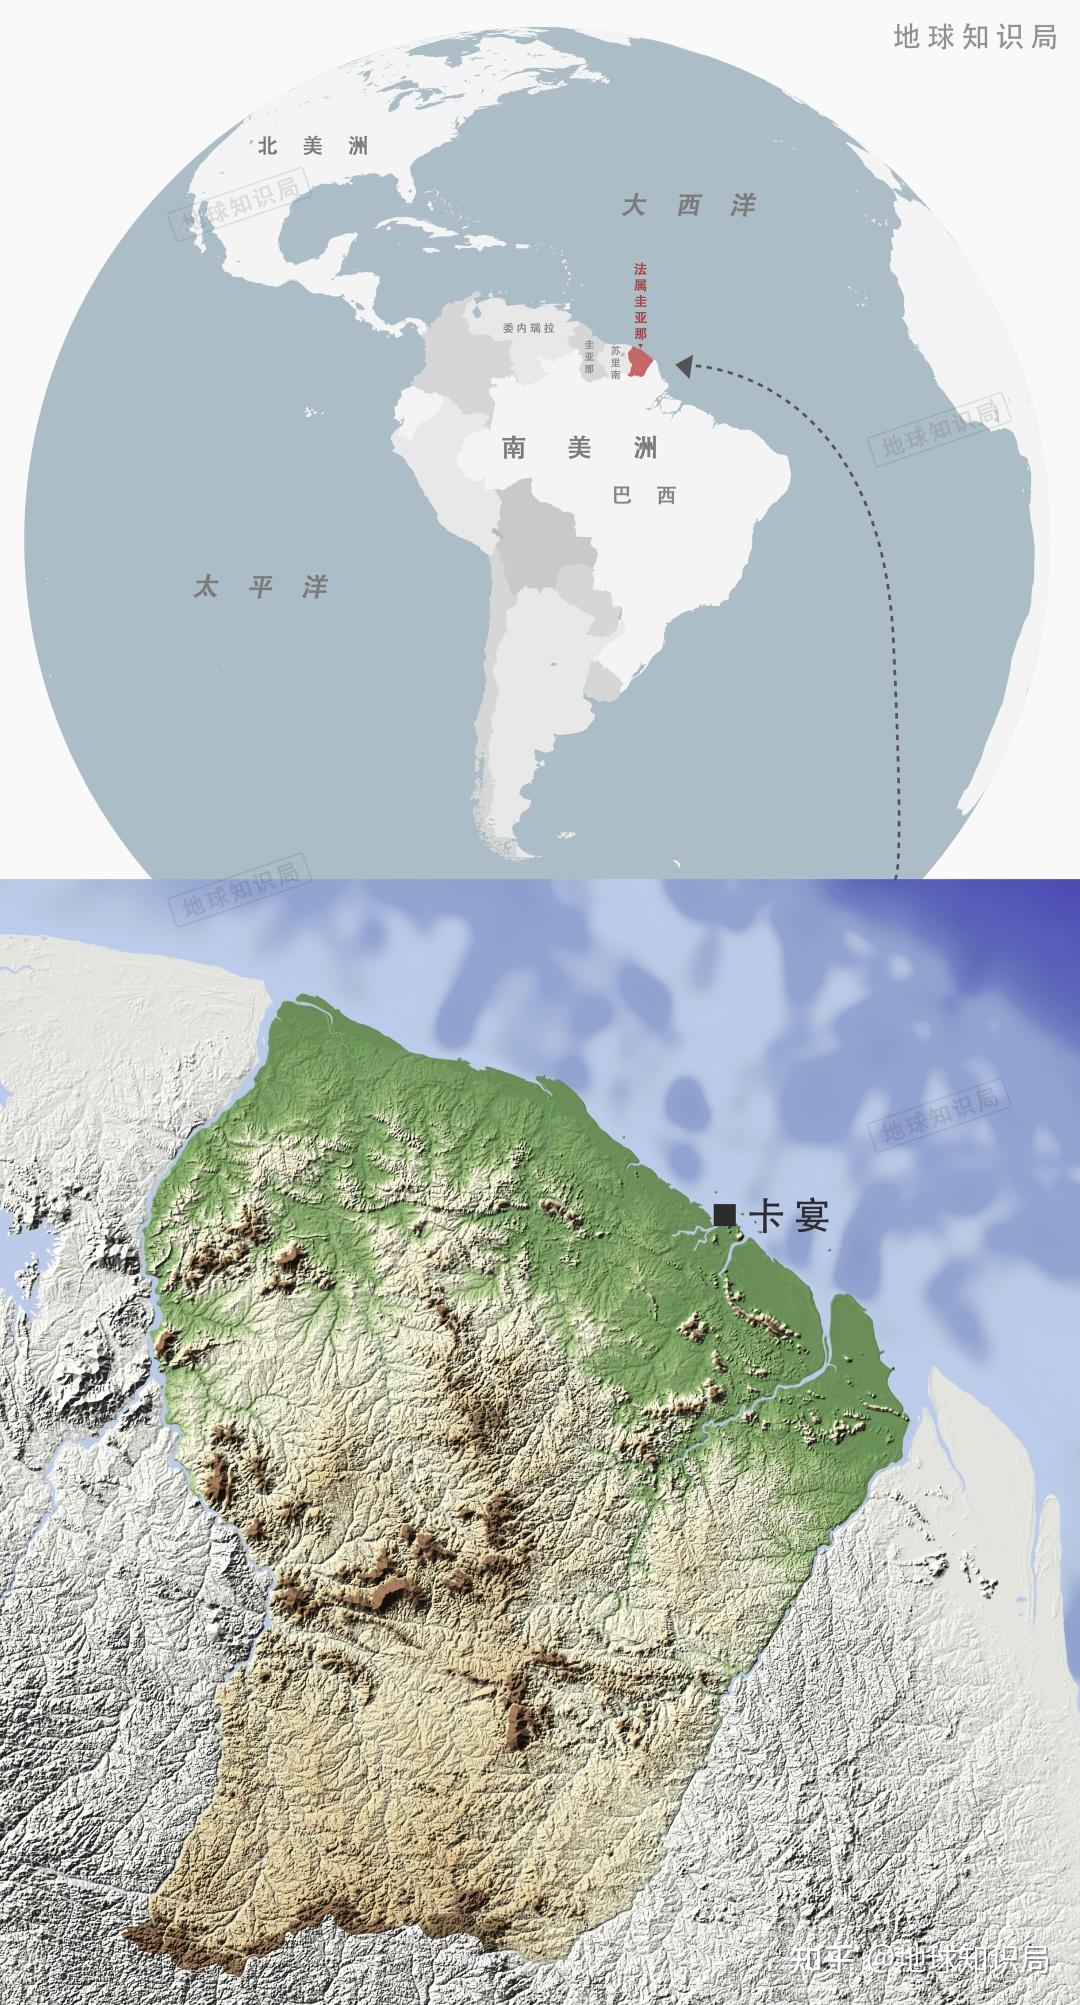 圭亚那政区图 - 圭亚那地图 - 地理教师网